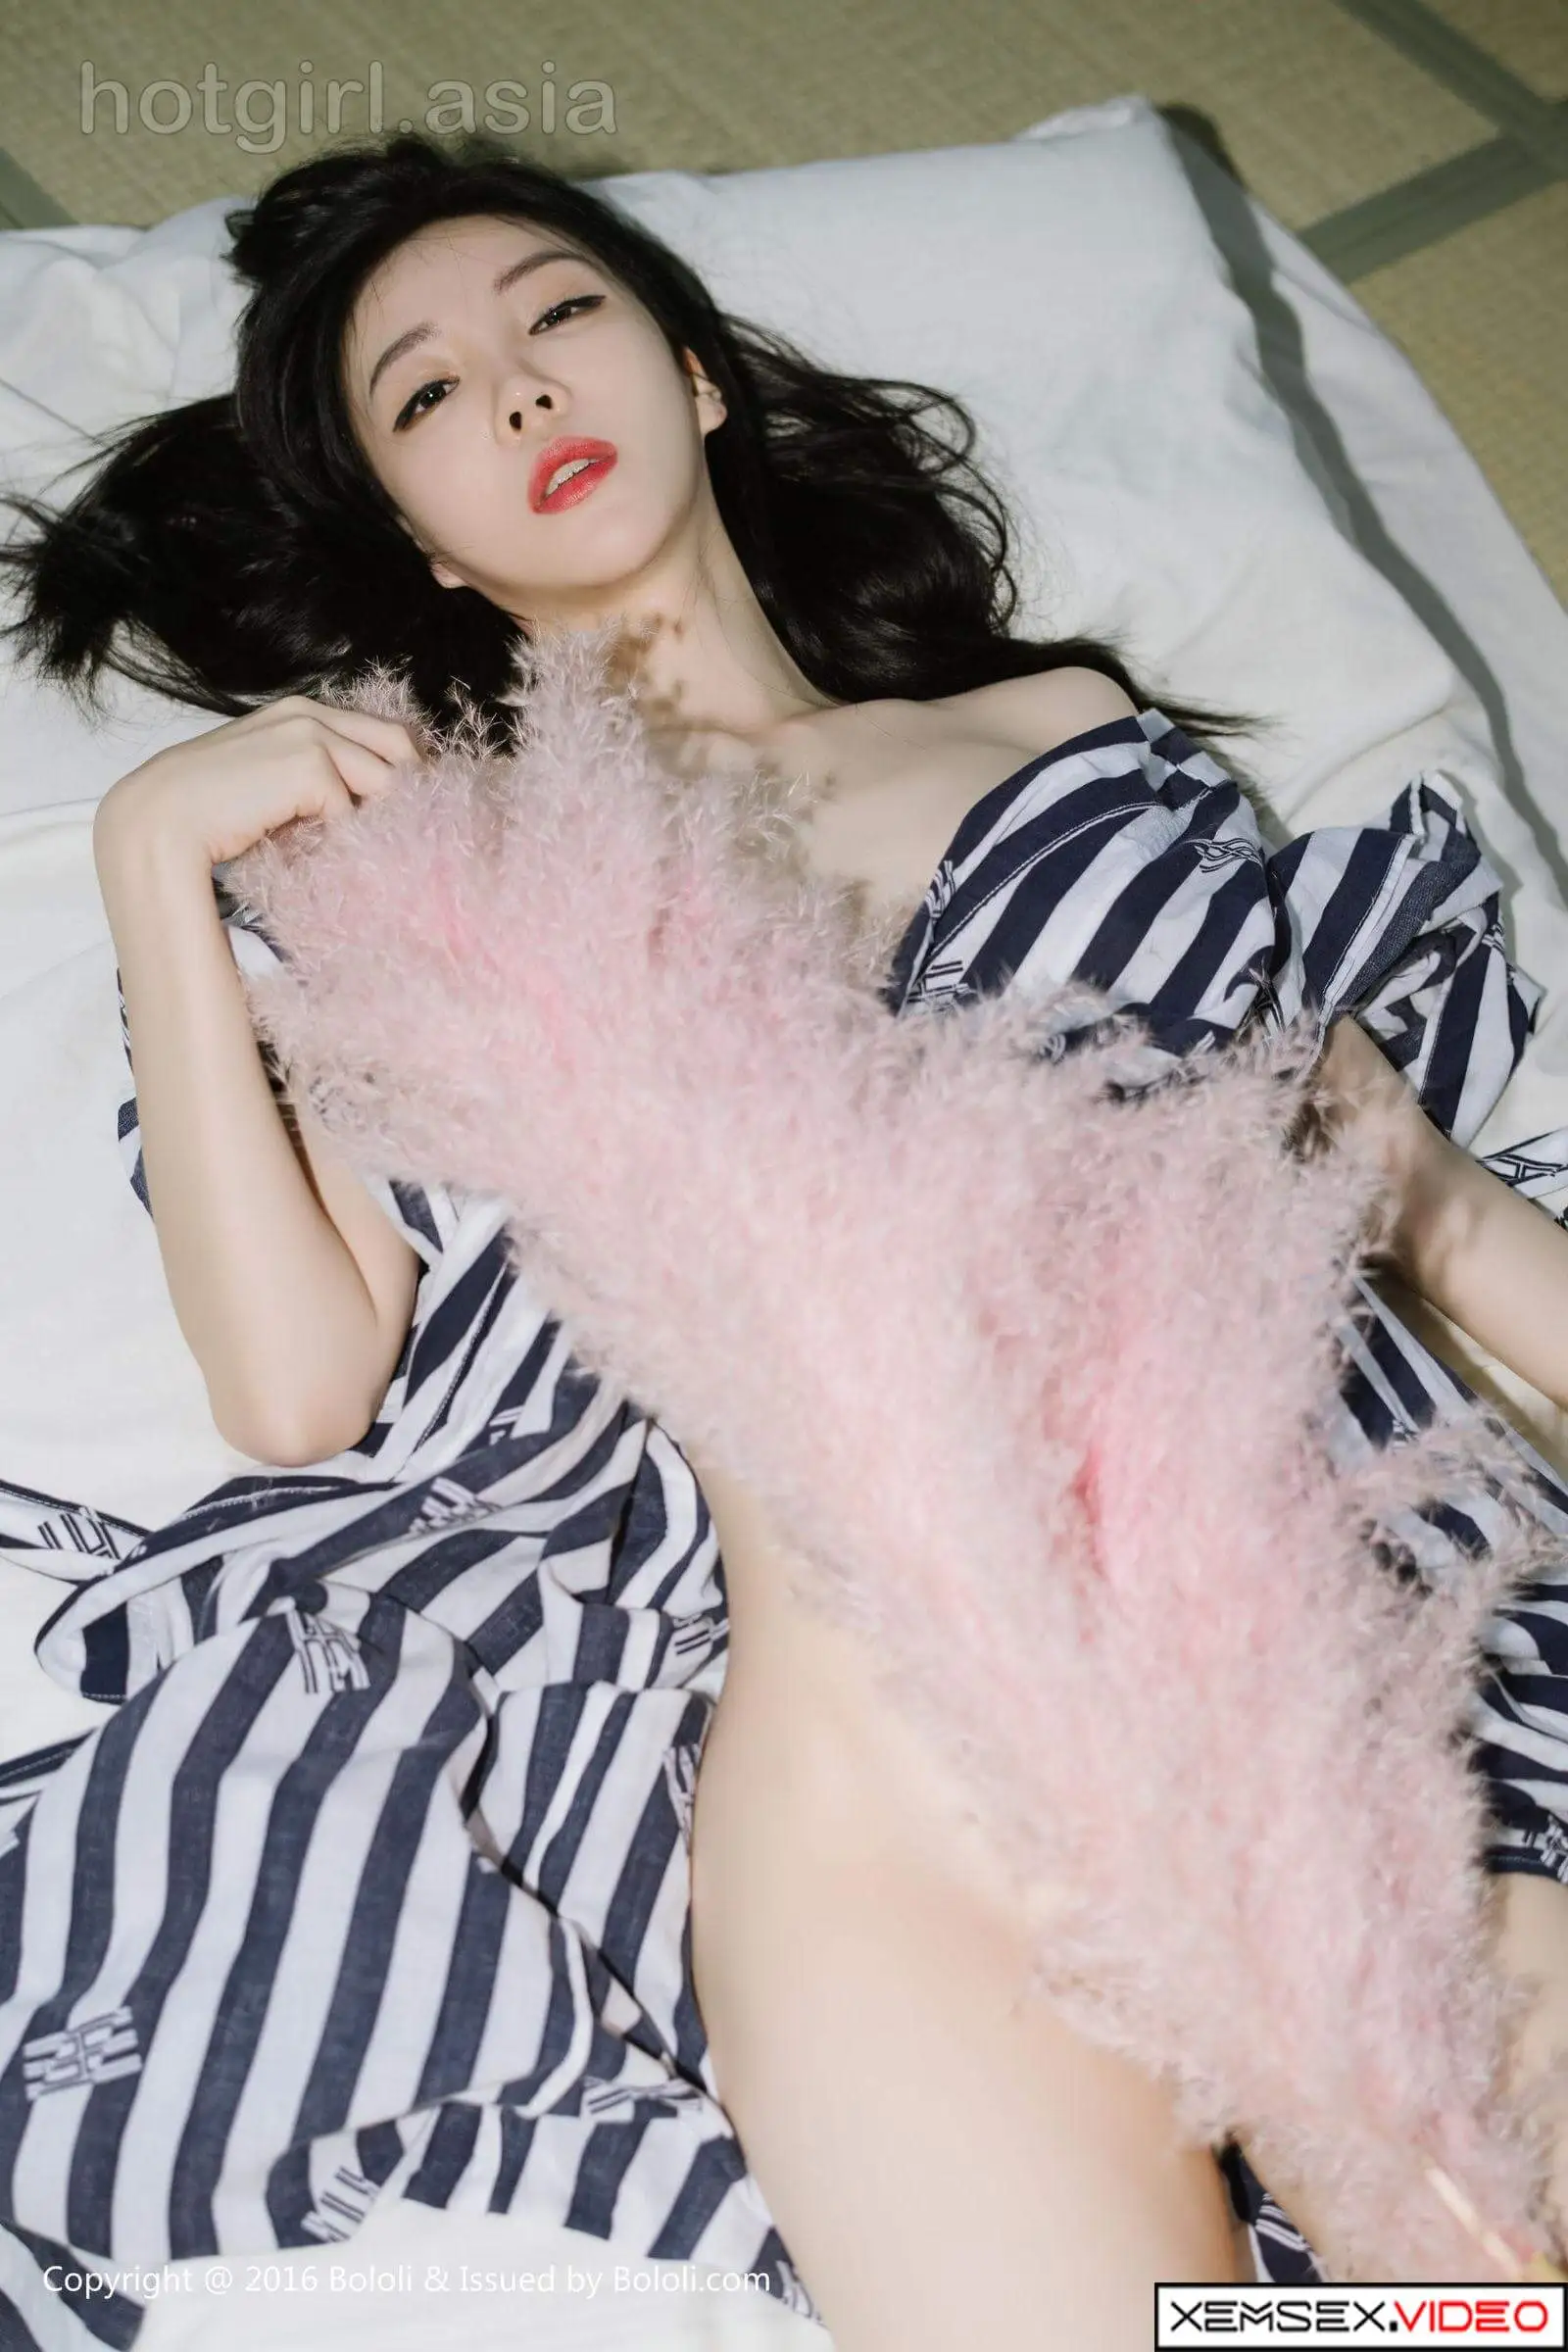 bộ ảnh nude tuyệt đẹp của hot girl hani nguyễn khi khoe thân